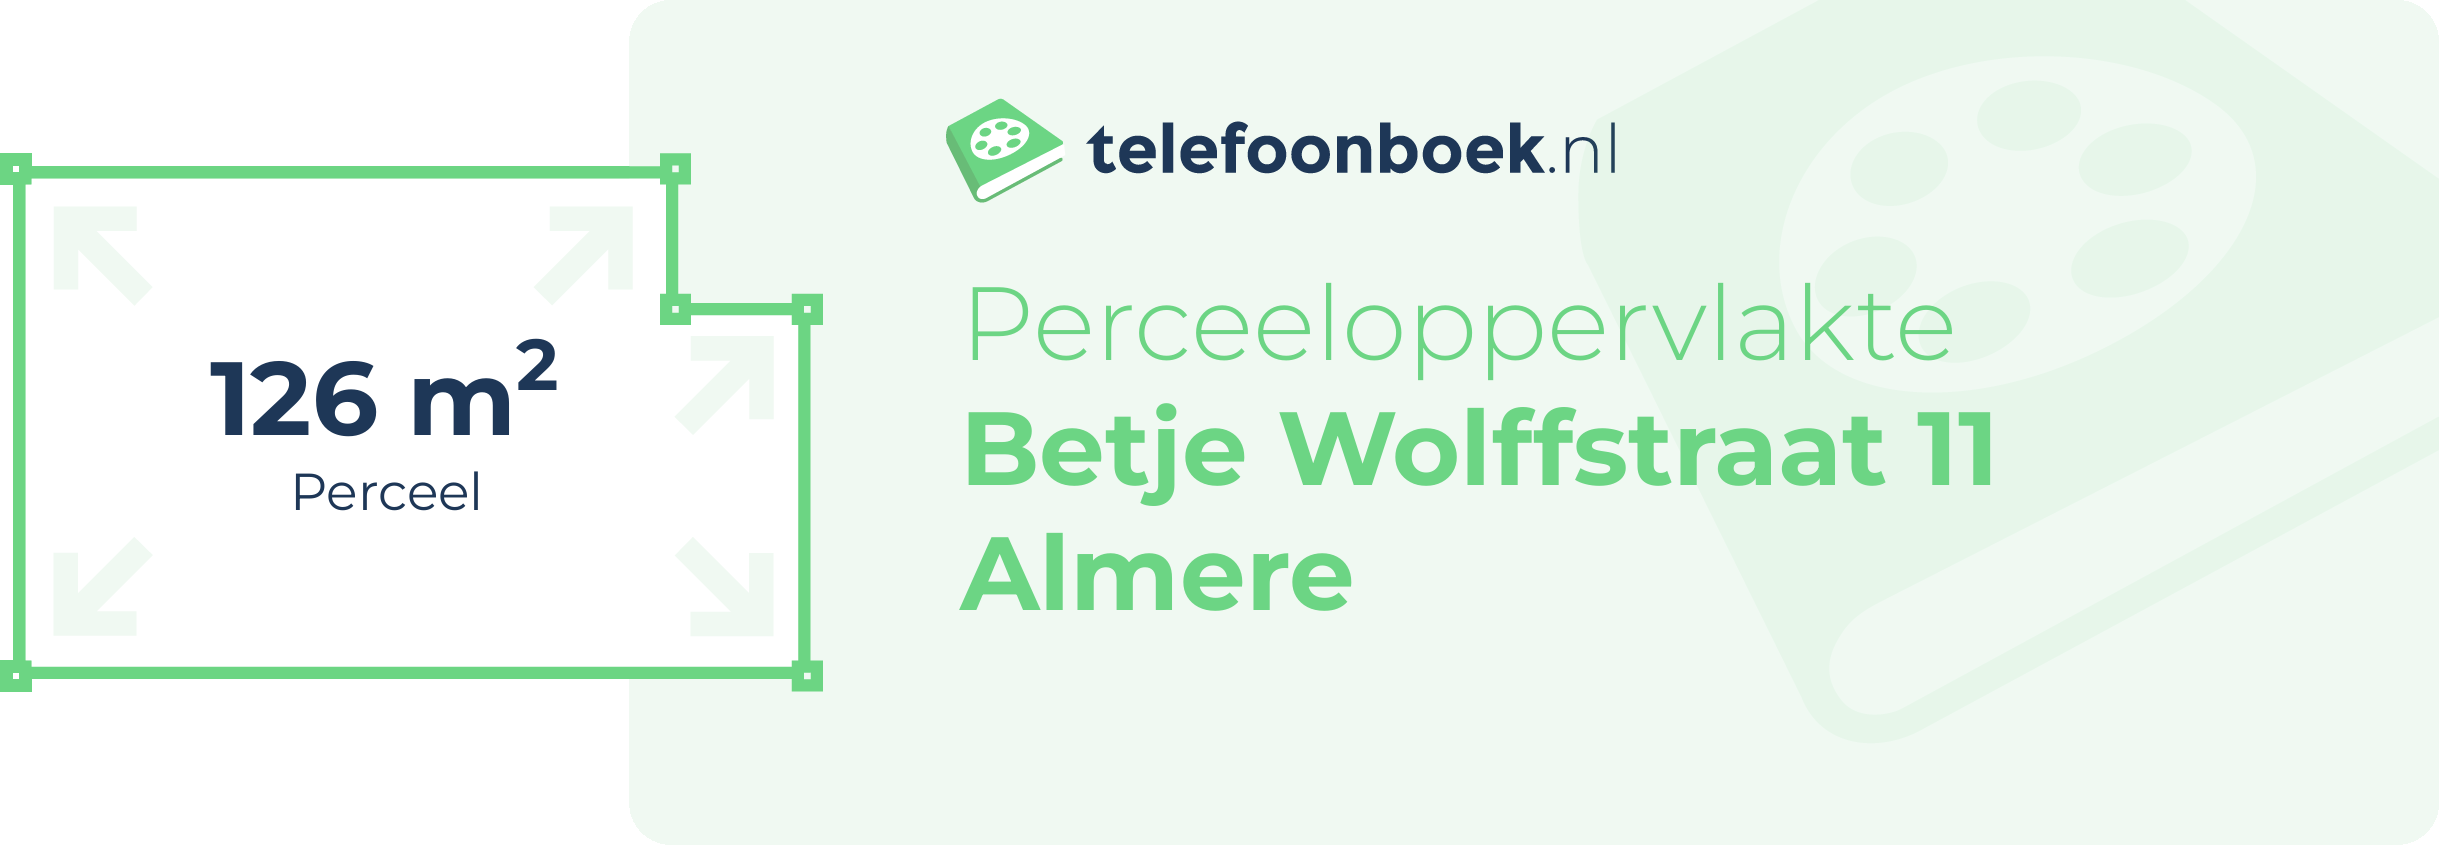 Perceeloppervlakte Betje Wolffstraat 11 Almere